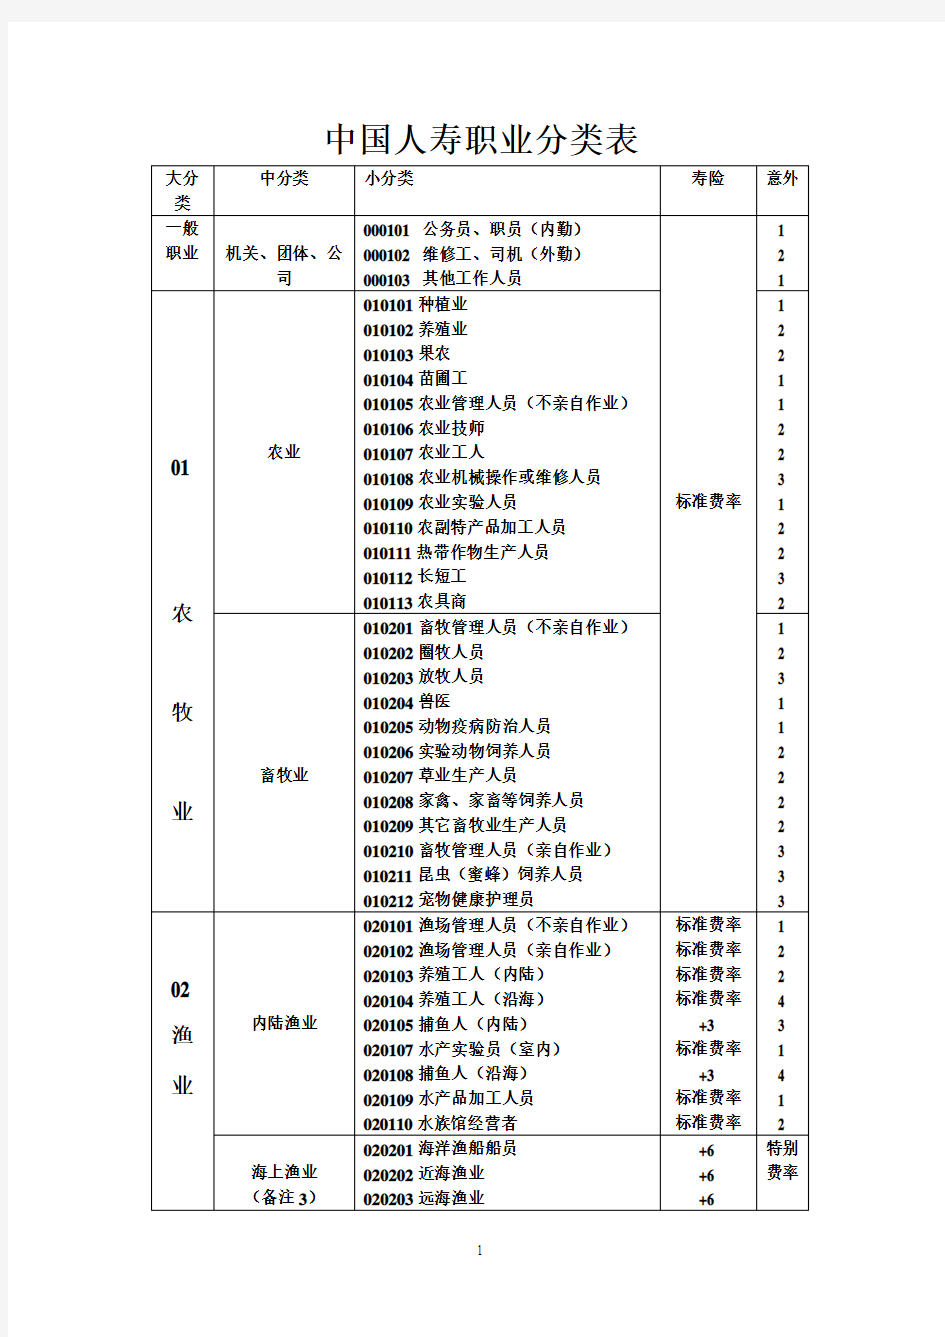 中国人寿职业分类表 - 副本